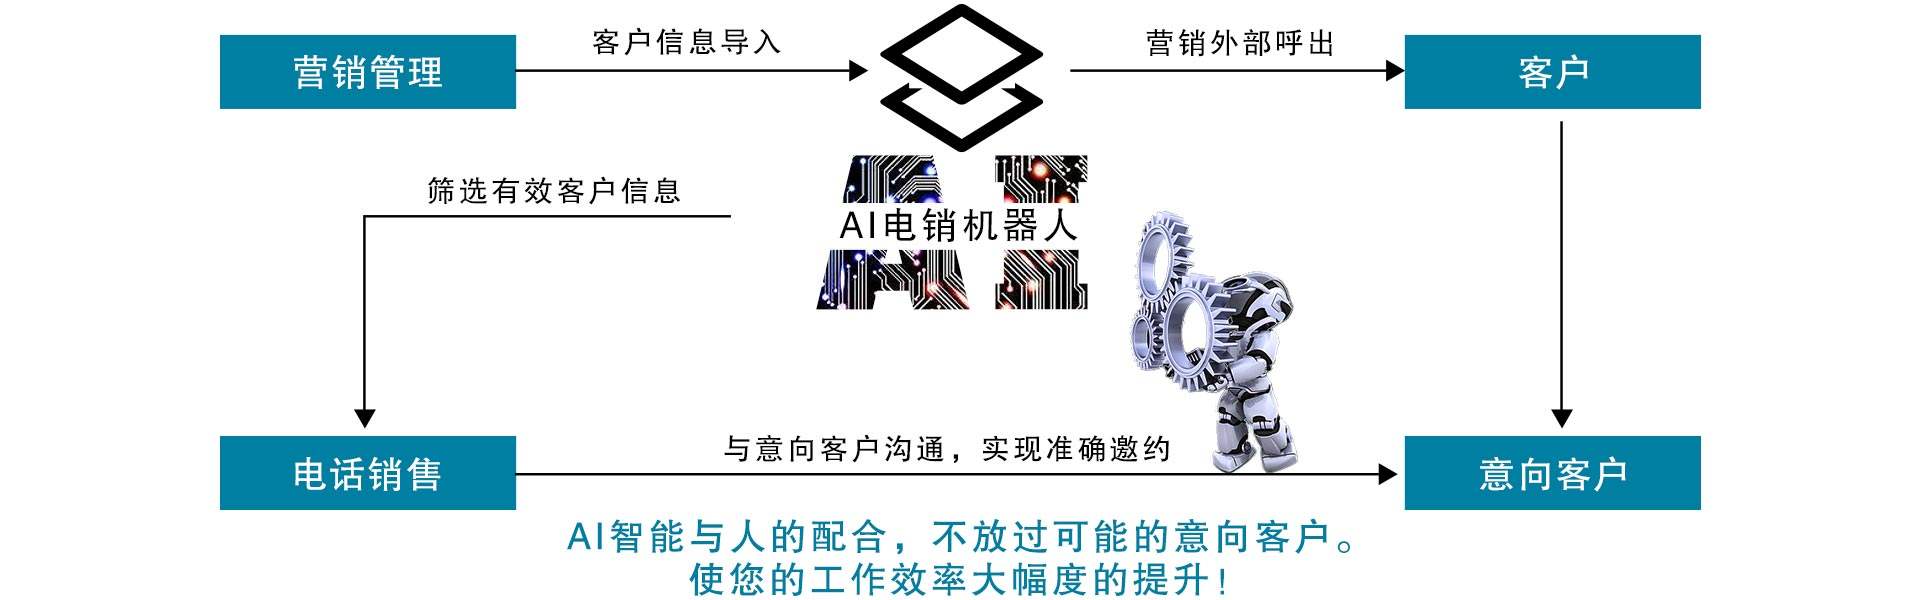 海南ai电话机器人开发铸造辉煌(海南机器人产业)